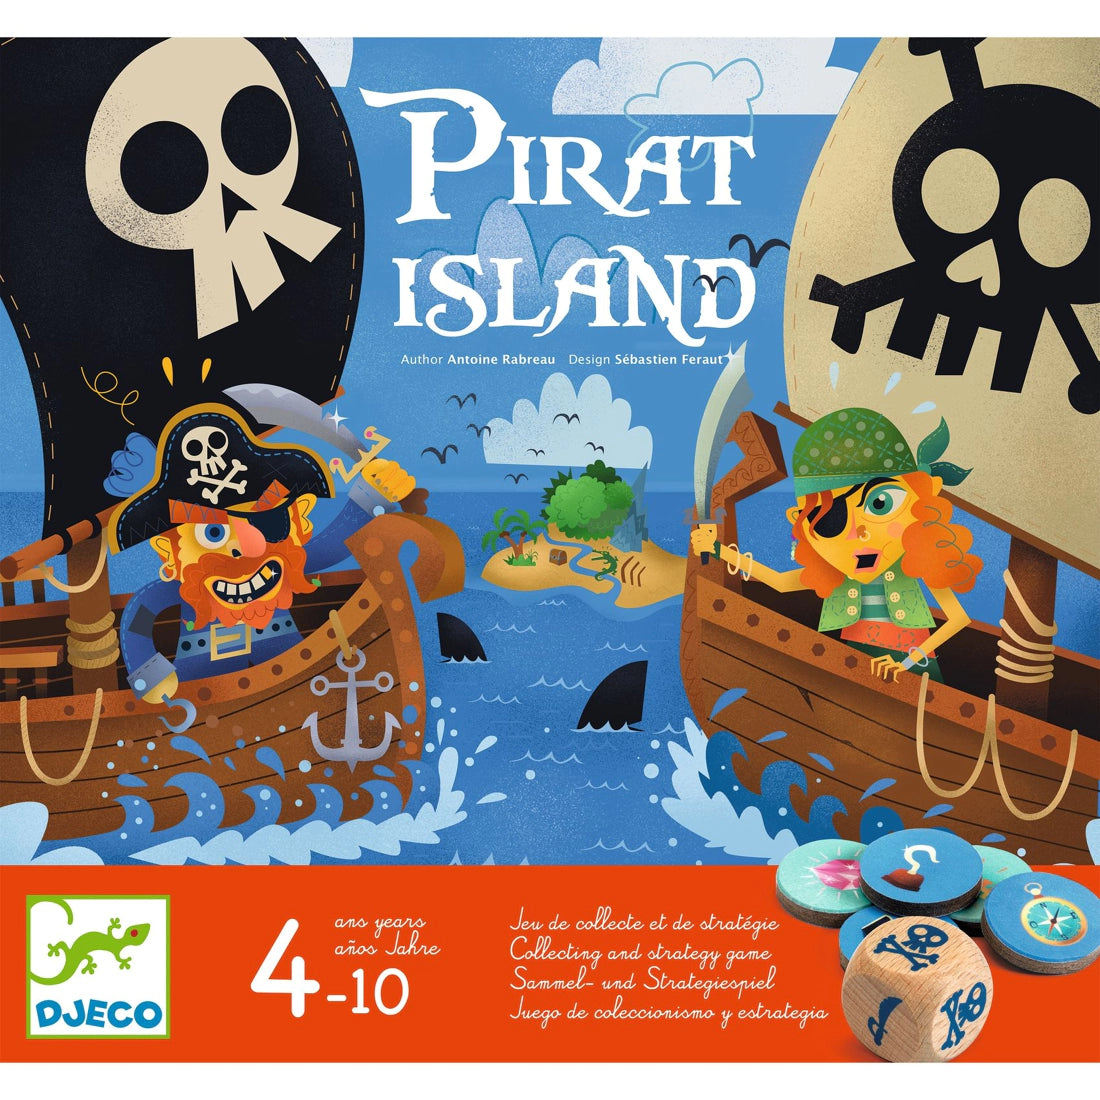 Pirate Island - Djeco